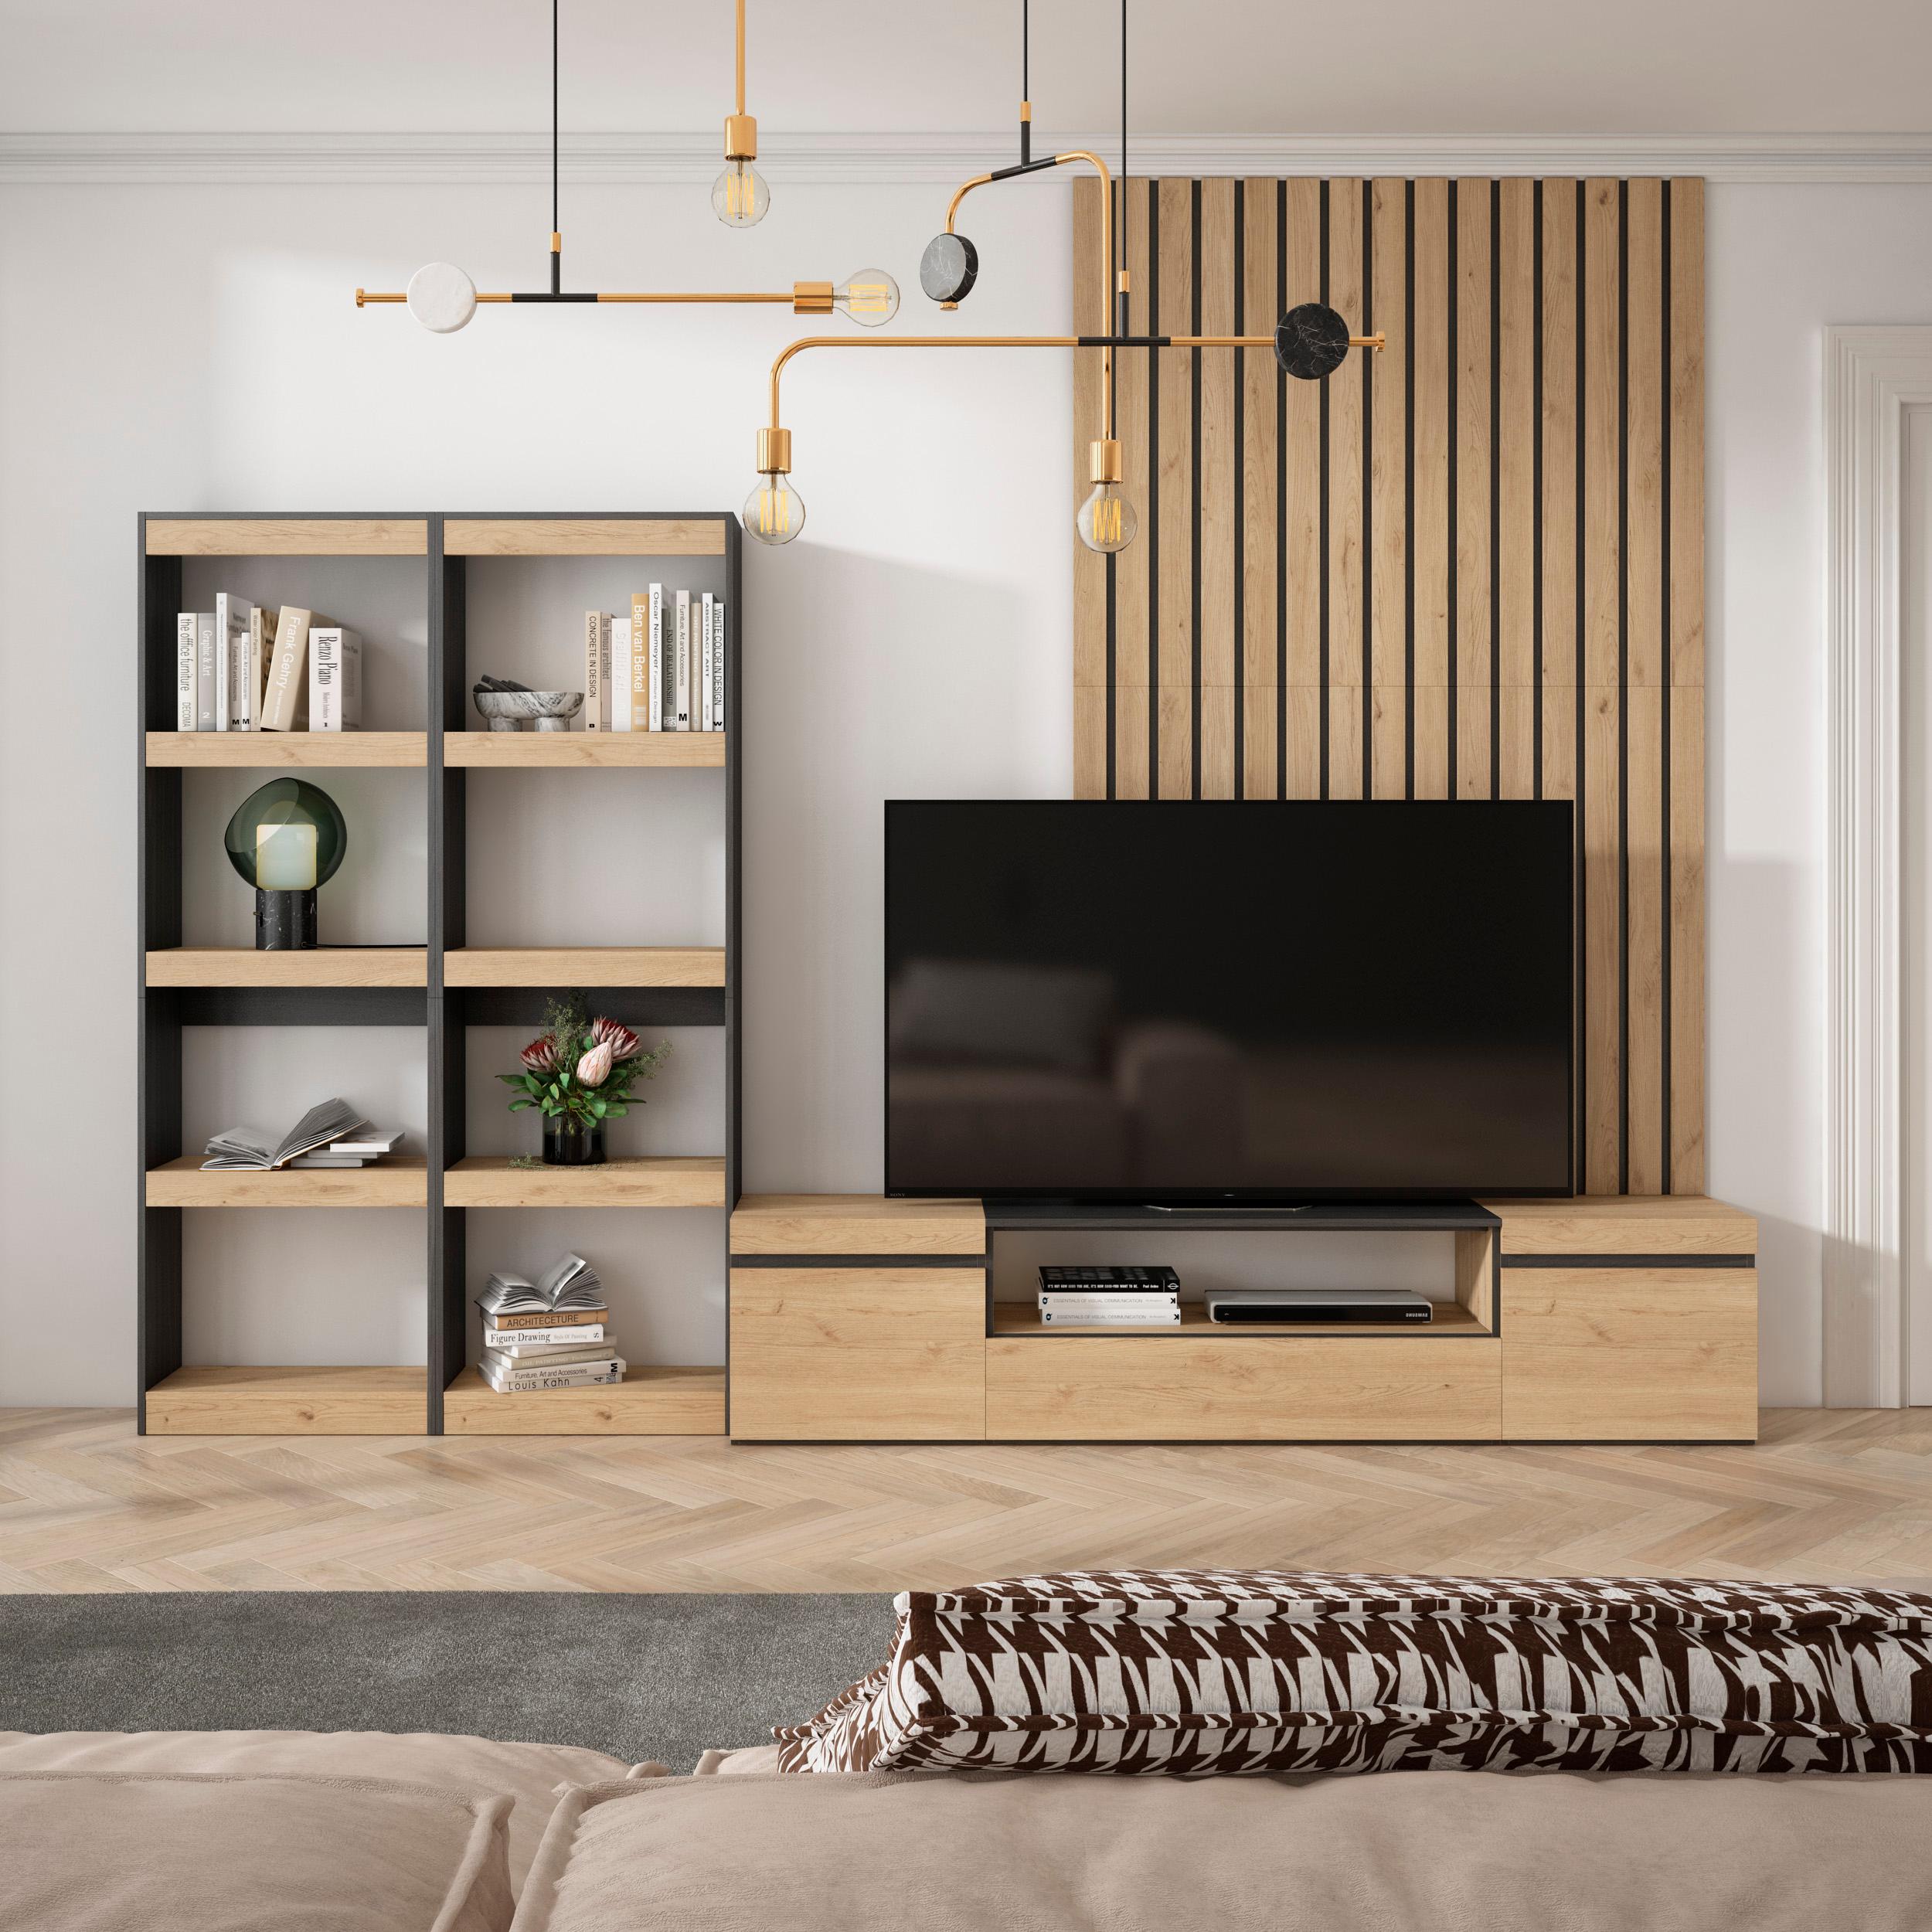 SKRAUT HOME - Skraut Home - Conjunto de muebles de Salón - Estantería - Mueble TV - Veteado de madera - Tacto poroso de alta calidad - Estilo Moderno